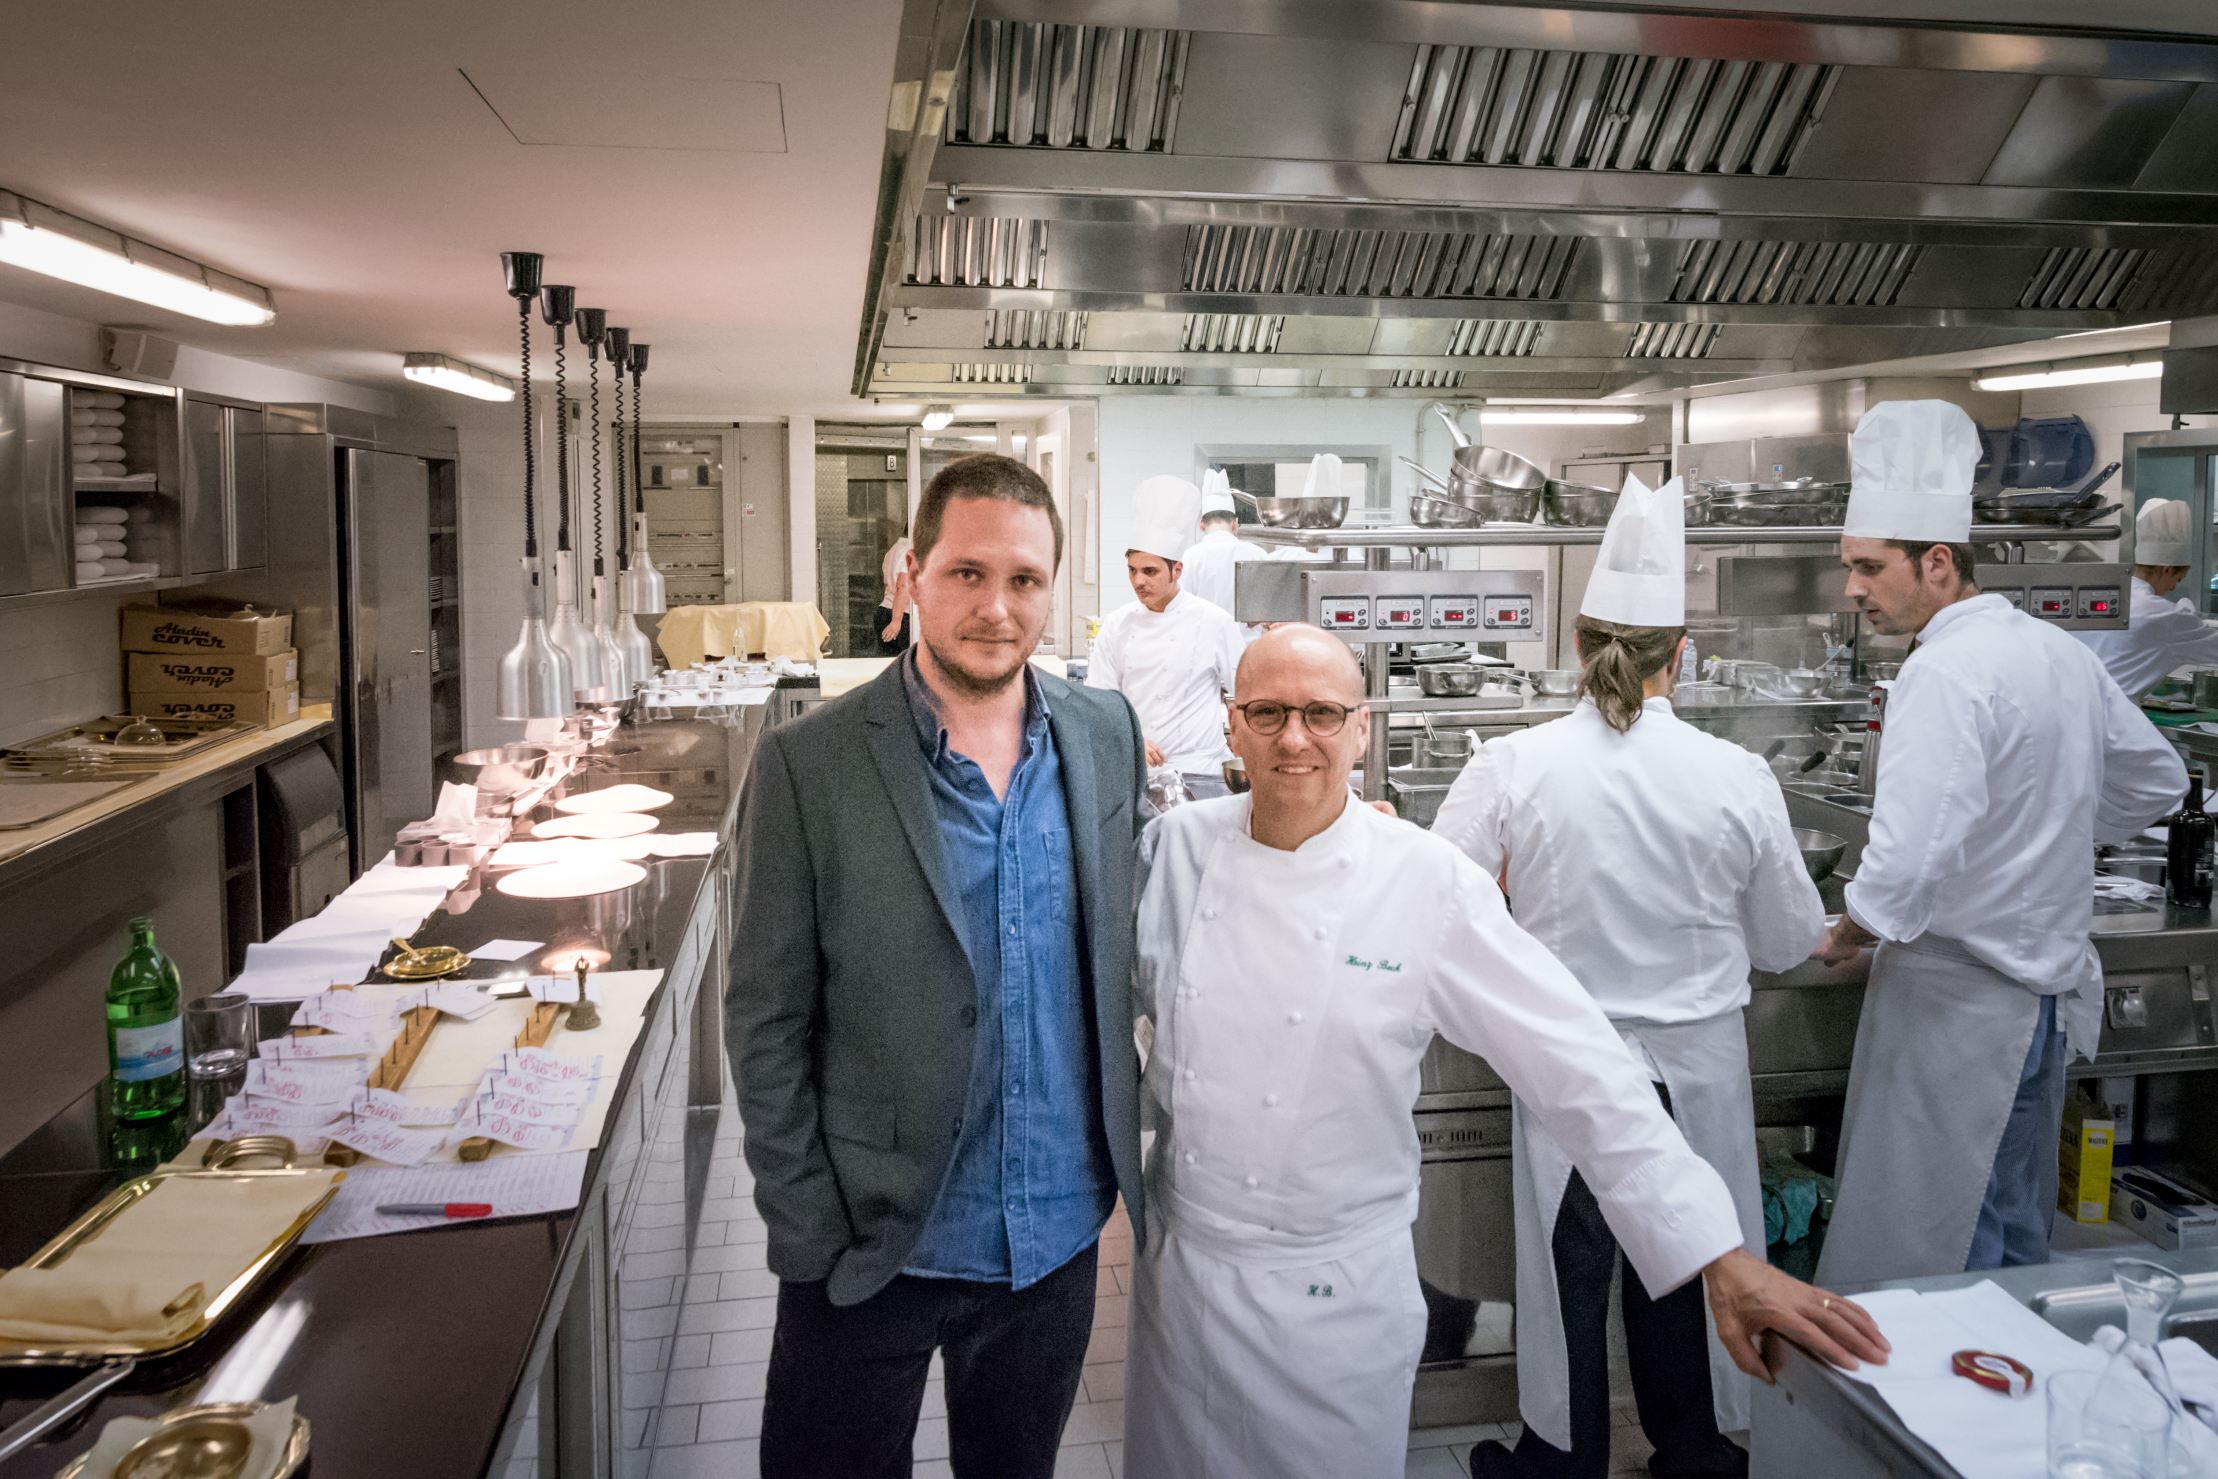 La Pergola, Rome - Cedric Lizotte with chef Heinz Beck